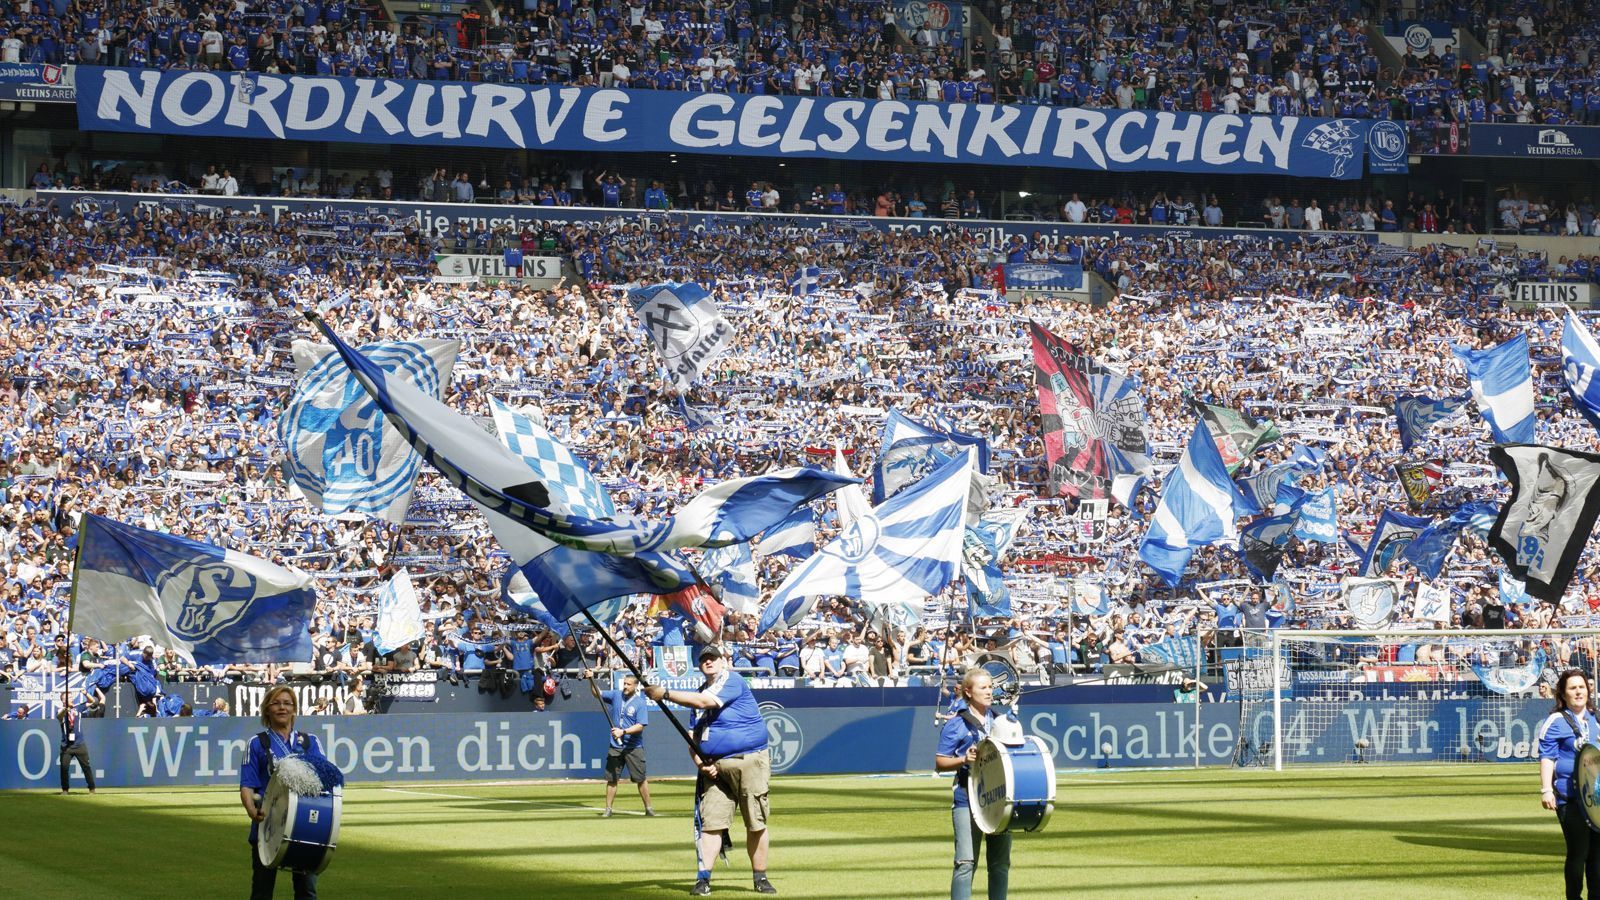 
                <strong>Platz 27: FC Schalke 04</strong><br>
                Durchschnittlicher Ticketpreis: 31,60 Euro
              